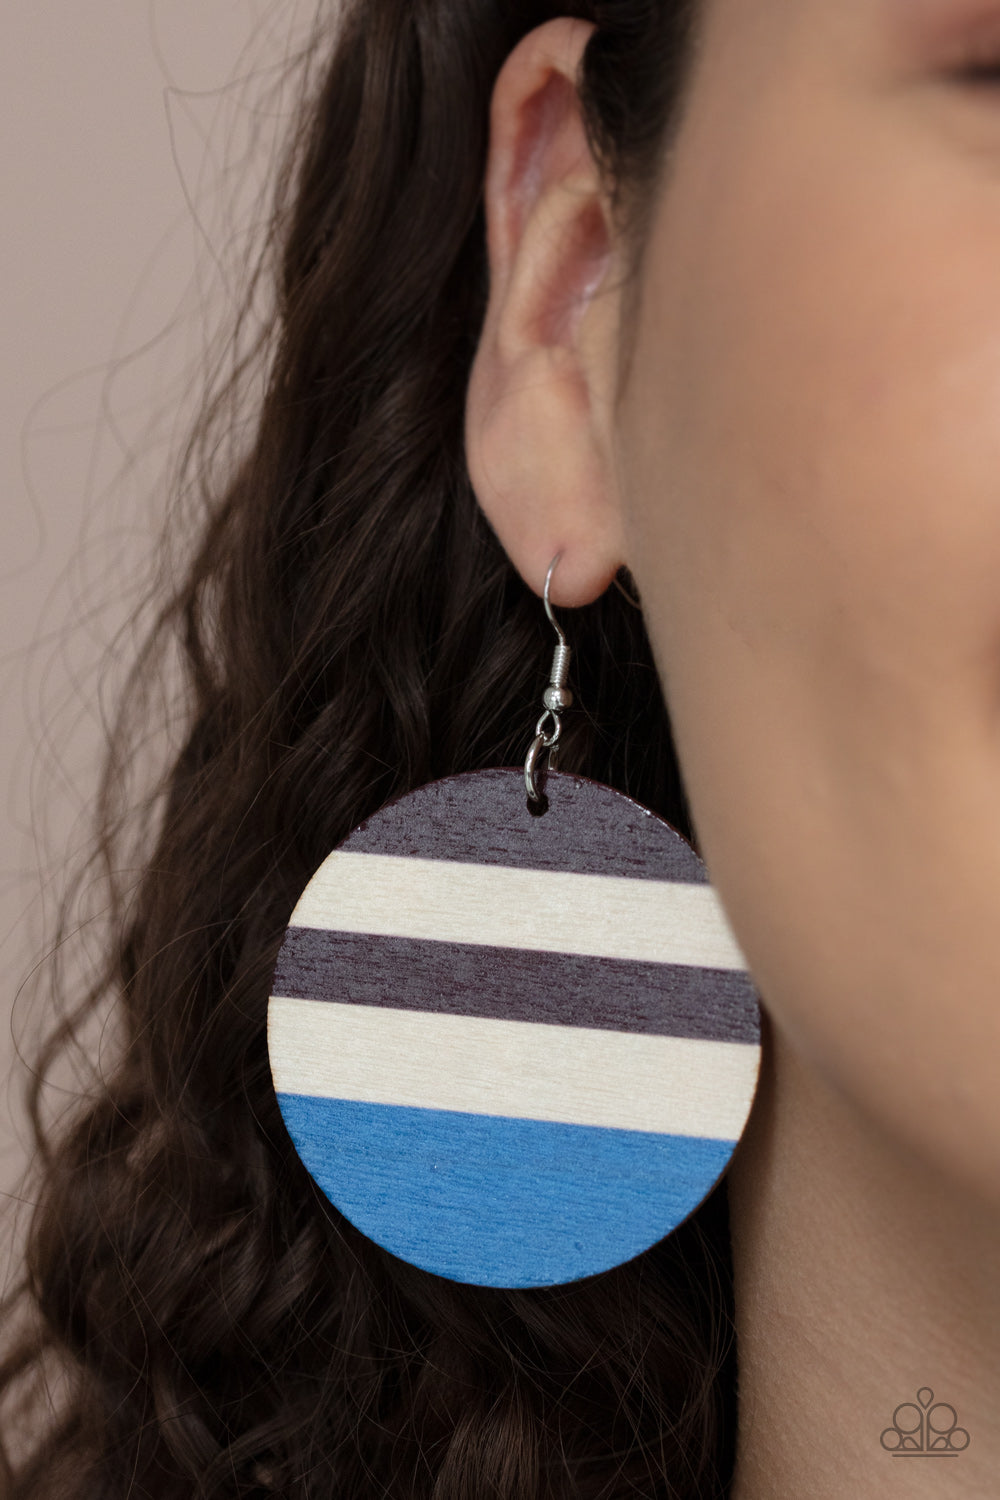 Yacht Party Blue
Earrings - Daria's Blings N Things